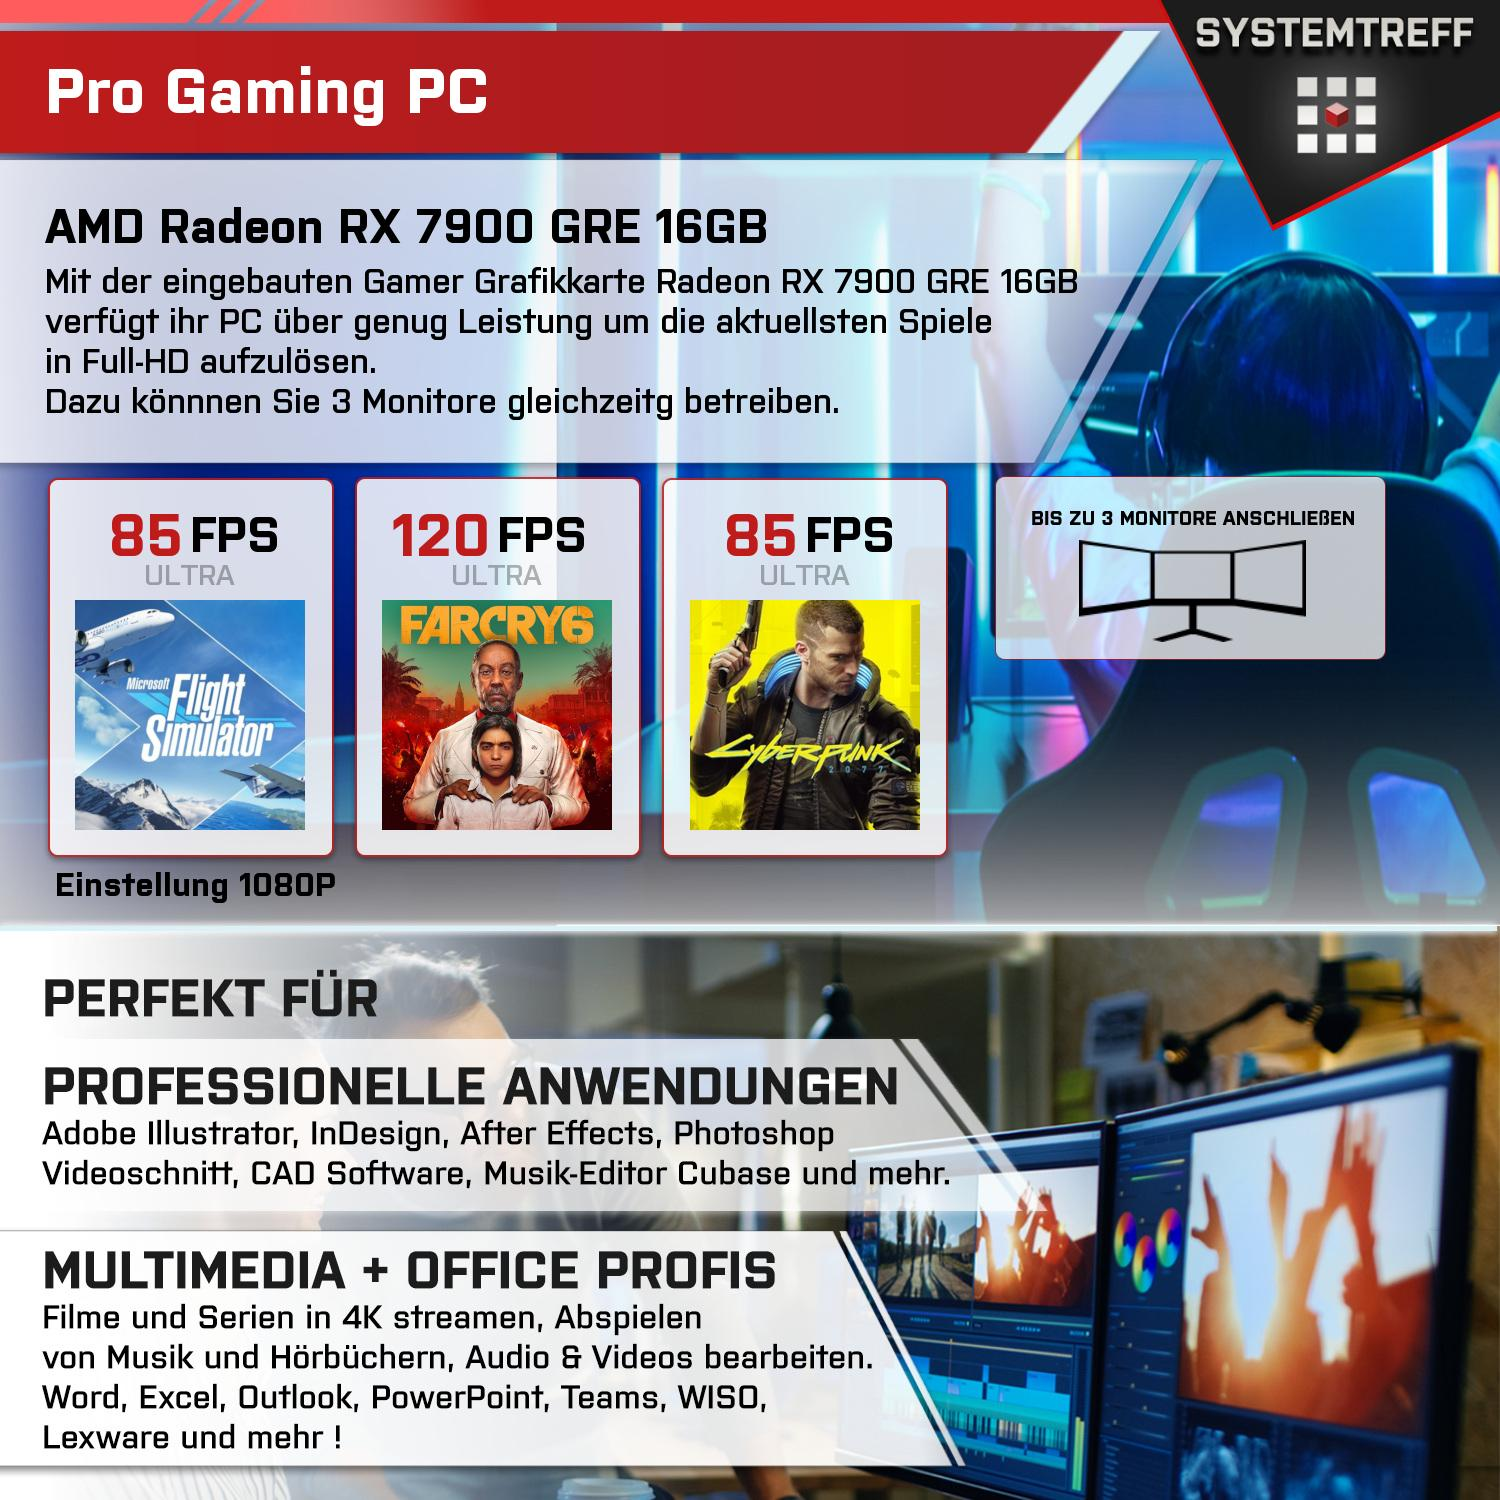 SYSTEMTREFF Gaming Komplett Intel 16 Prozessor, 32 Core mSSD, mit Komplett GB 1000 i9-11900K, PC RAM, GB GB i9-11900K